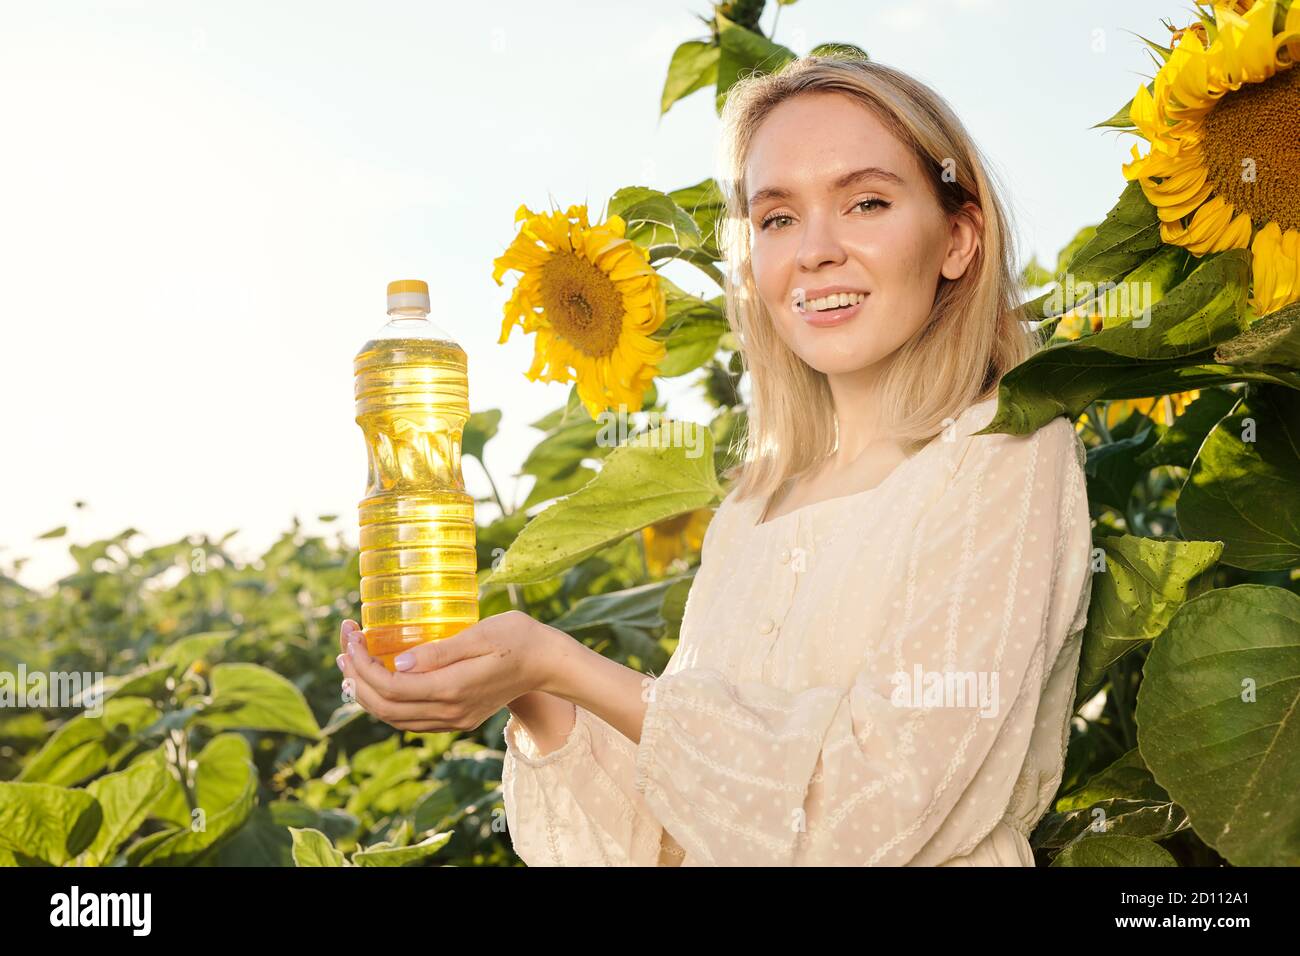 Lächelnd blonde junge Frau in weißem Kleid hält Flasche Sonnenblumenöl Stockfoto